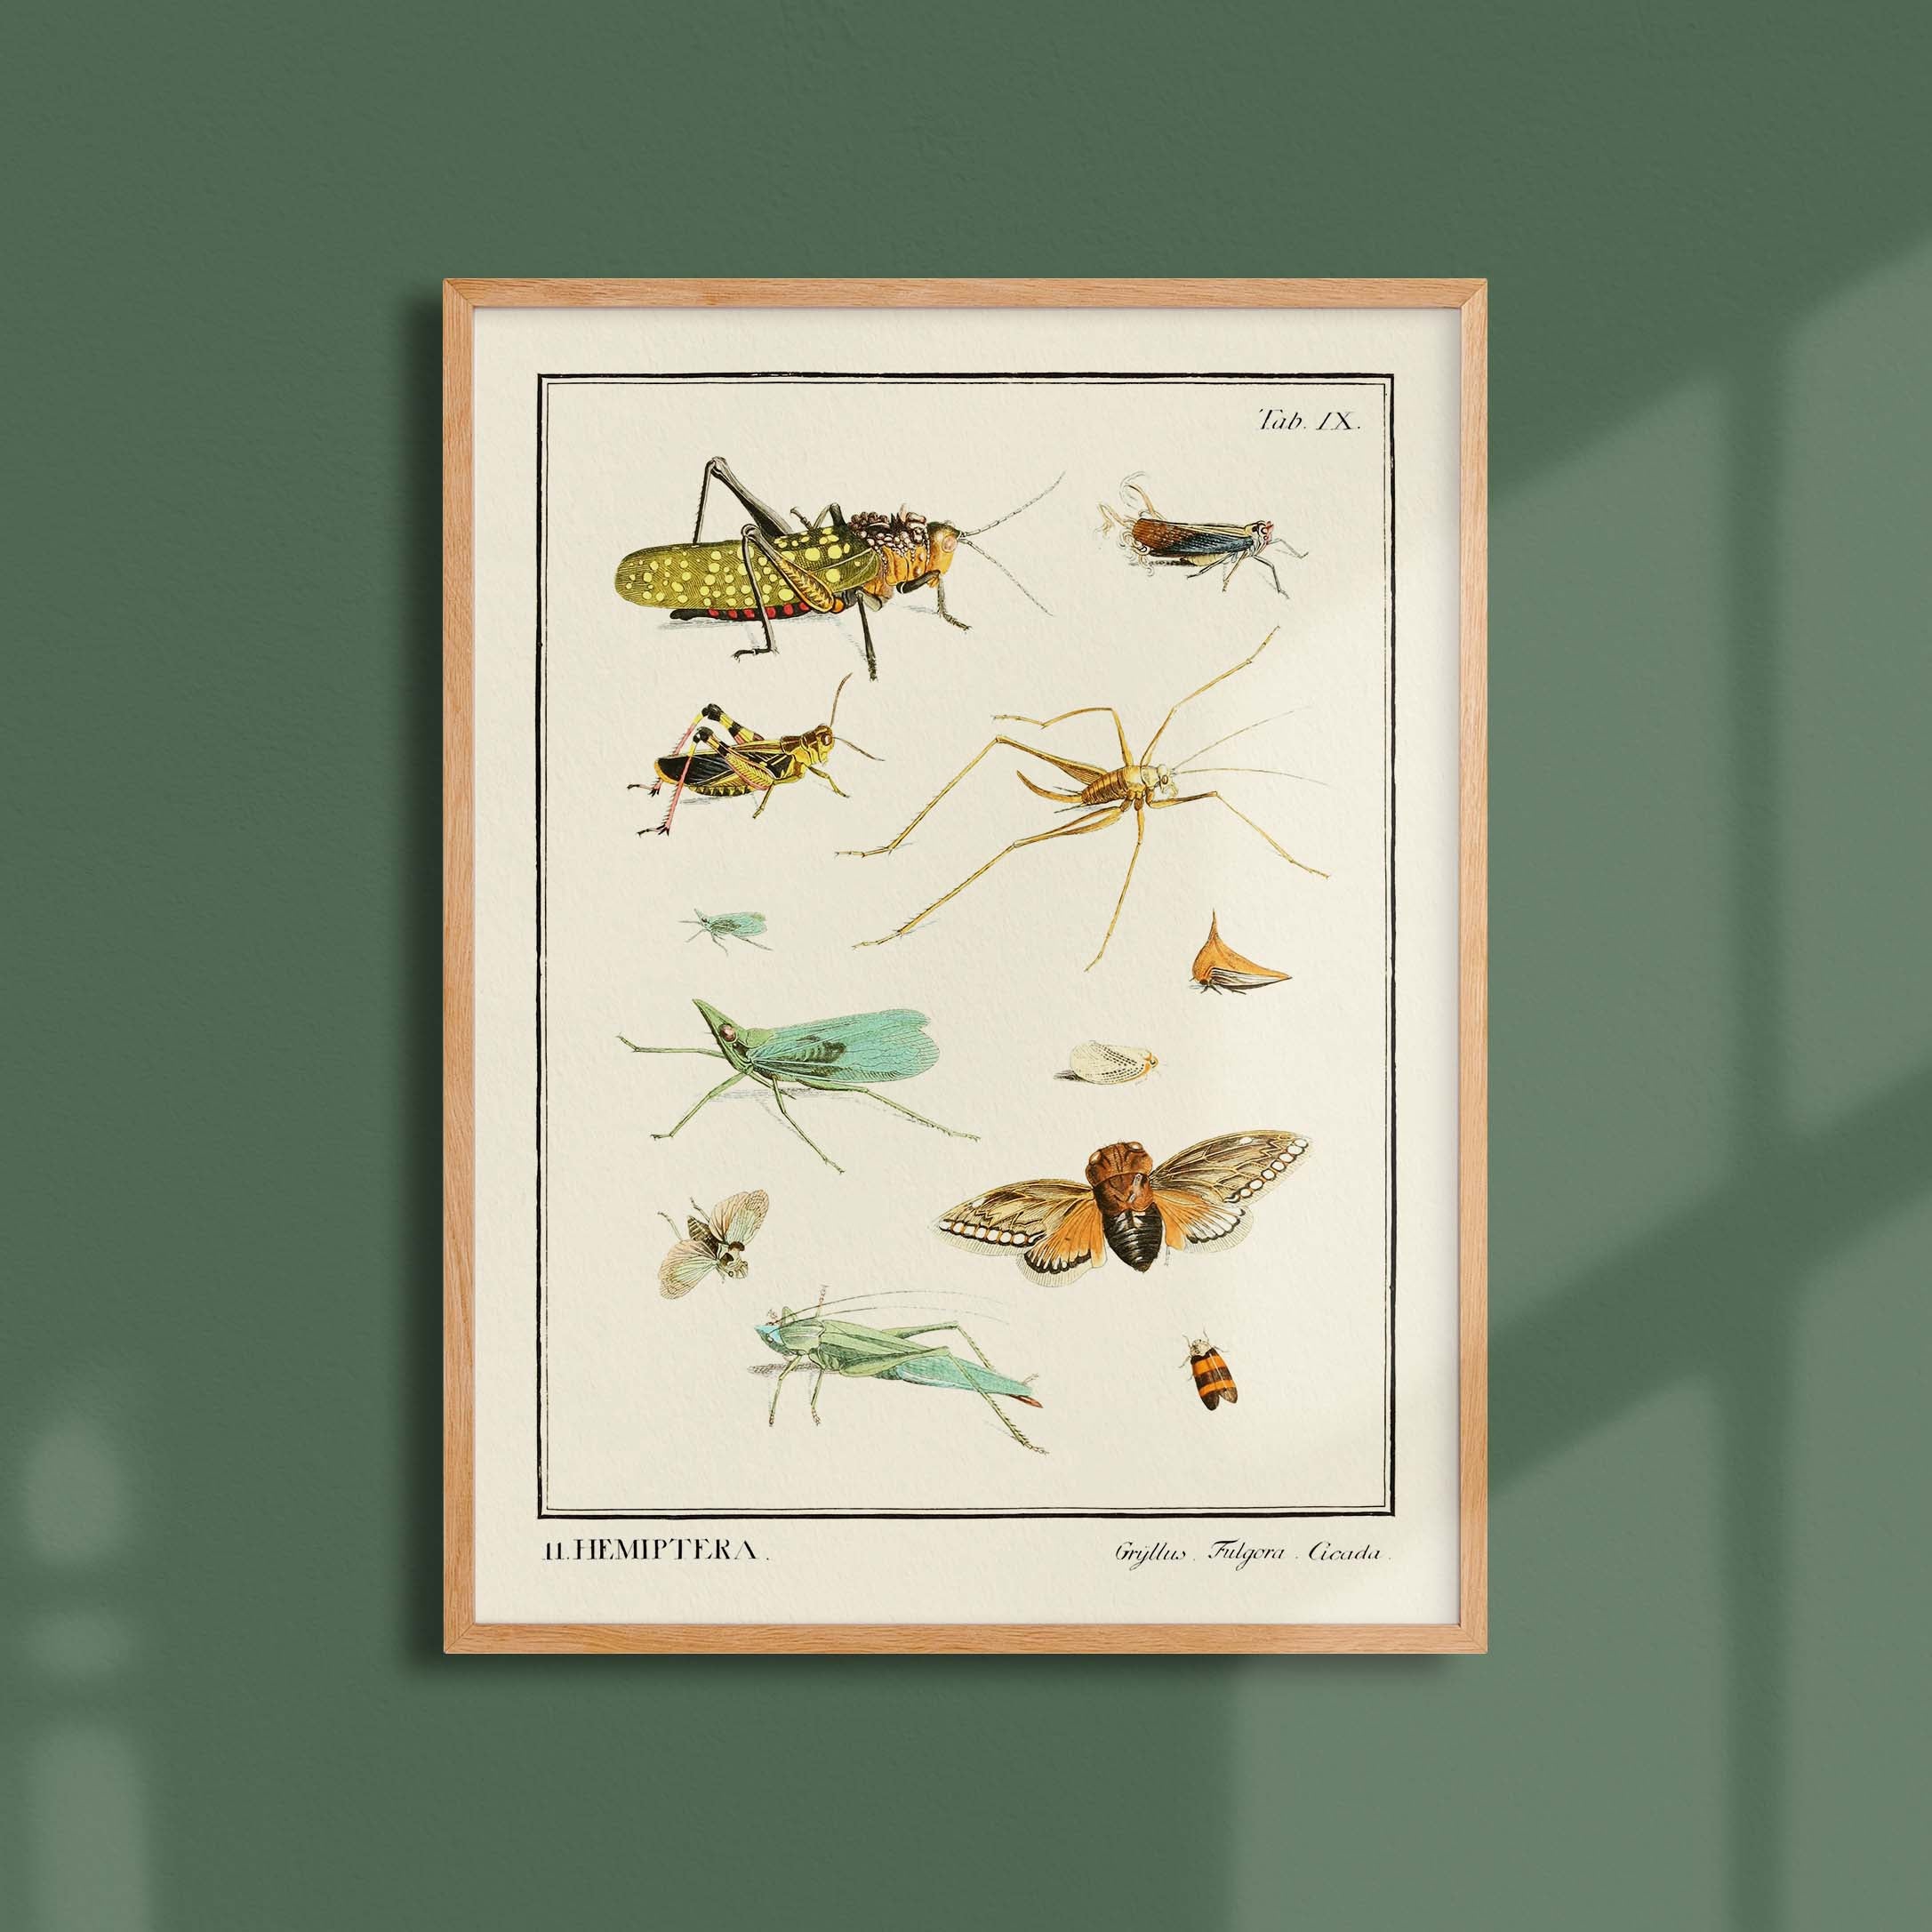 Planche d'entomologie - Hemiptera-oneart.fr